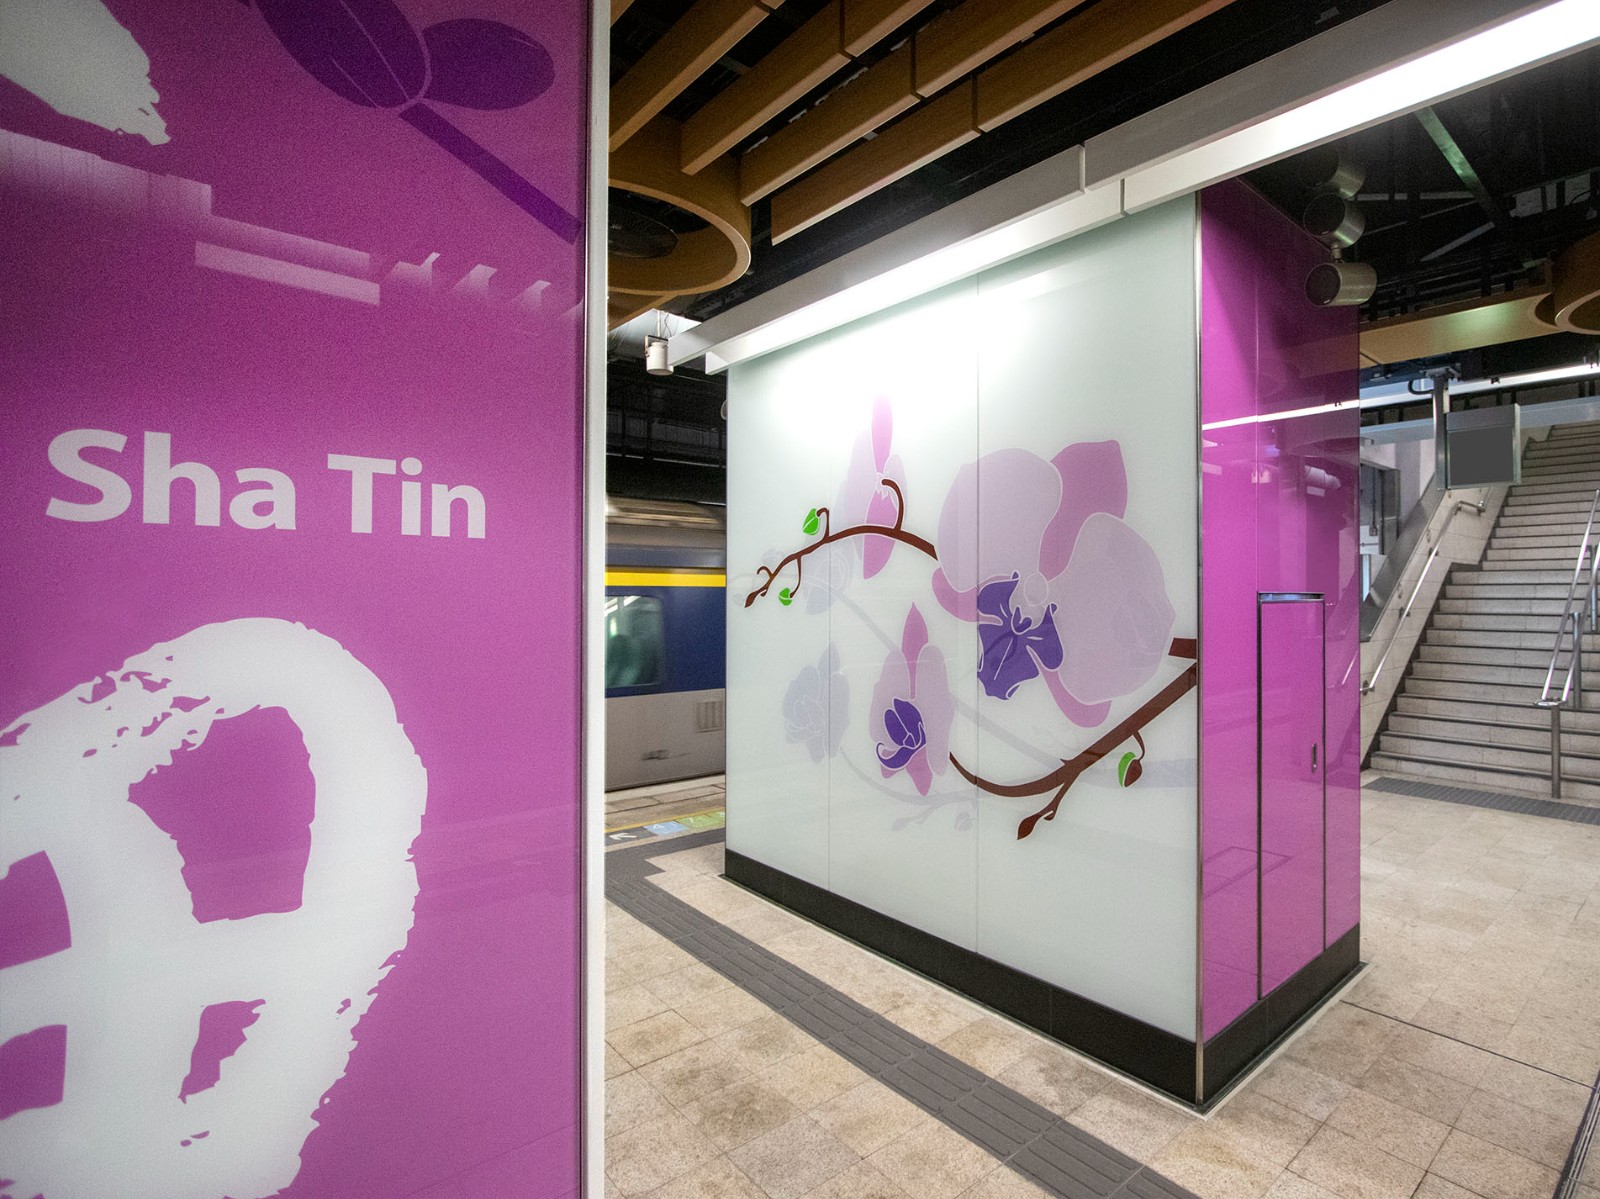 MTR Sha Tin Station